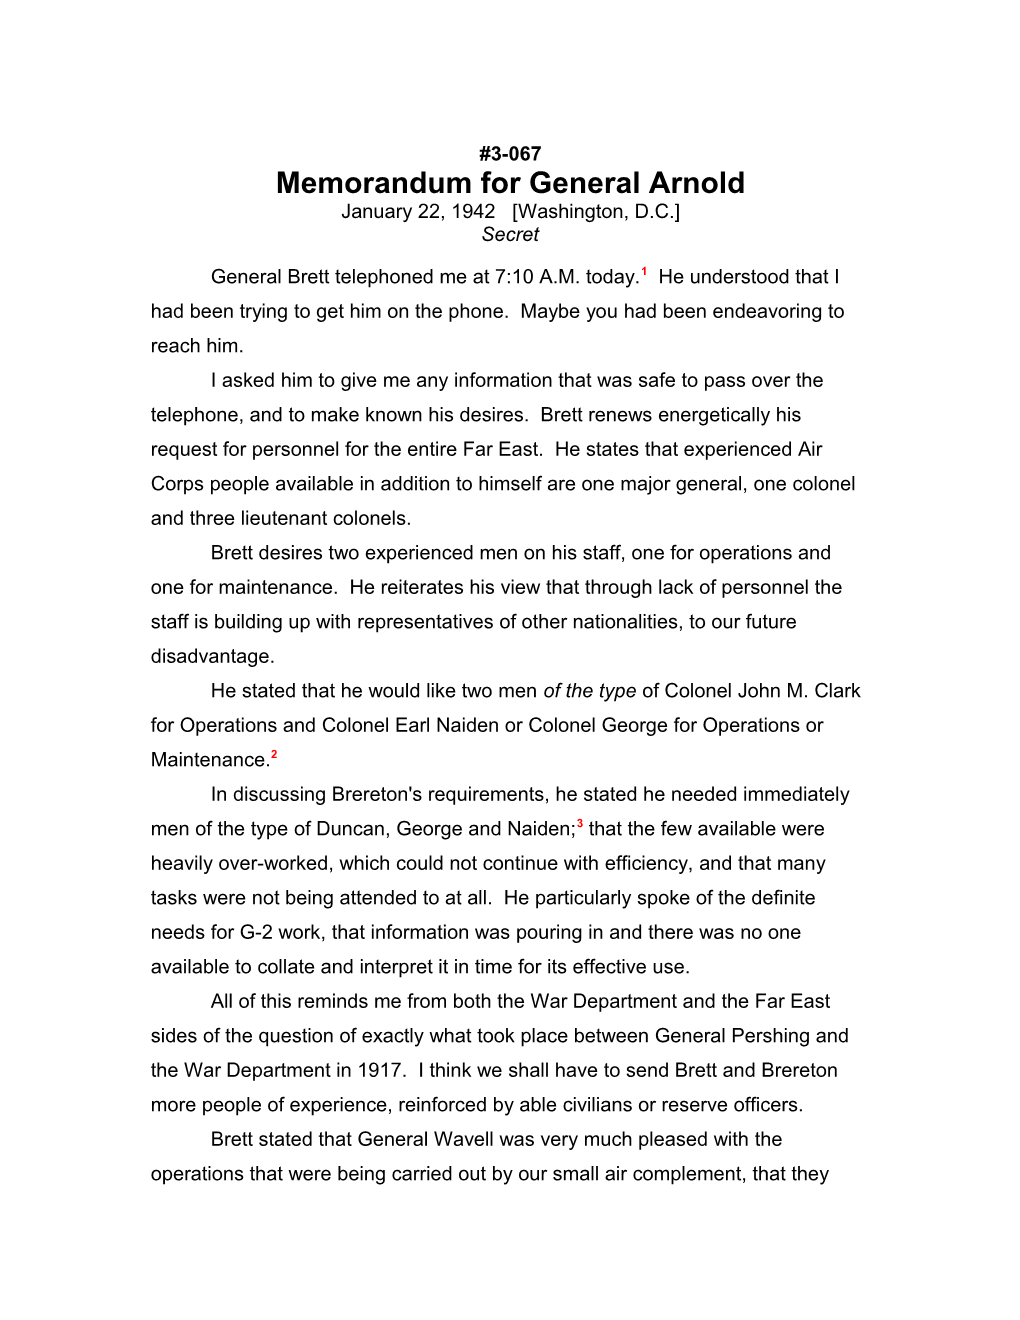 Memorandum for General Arnold